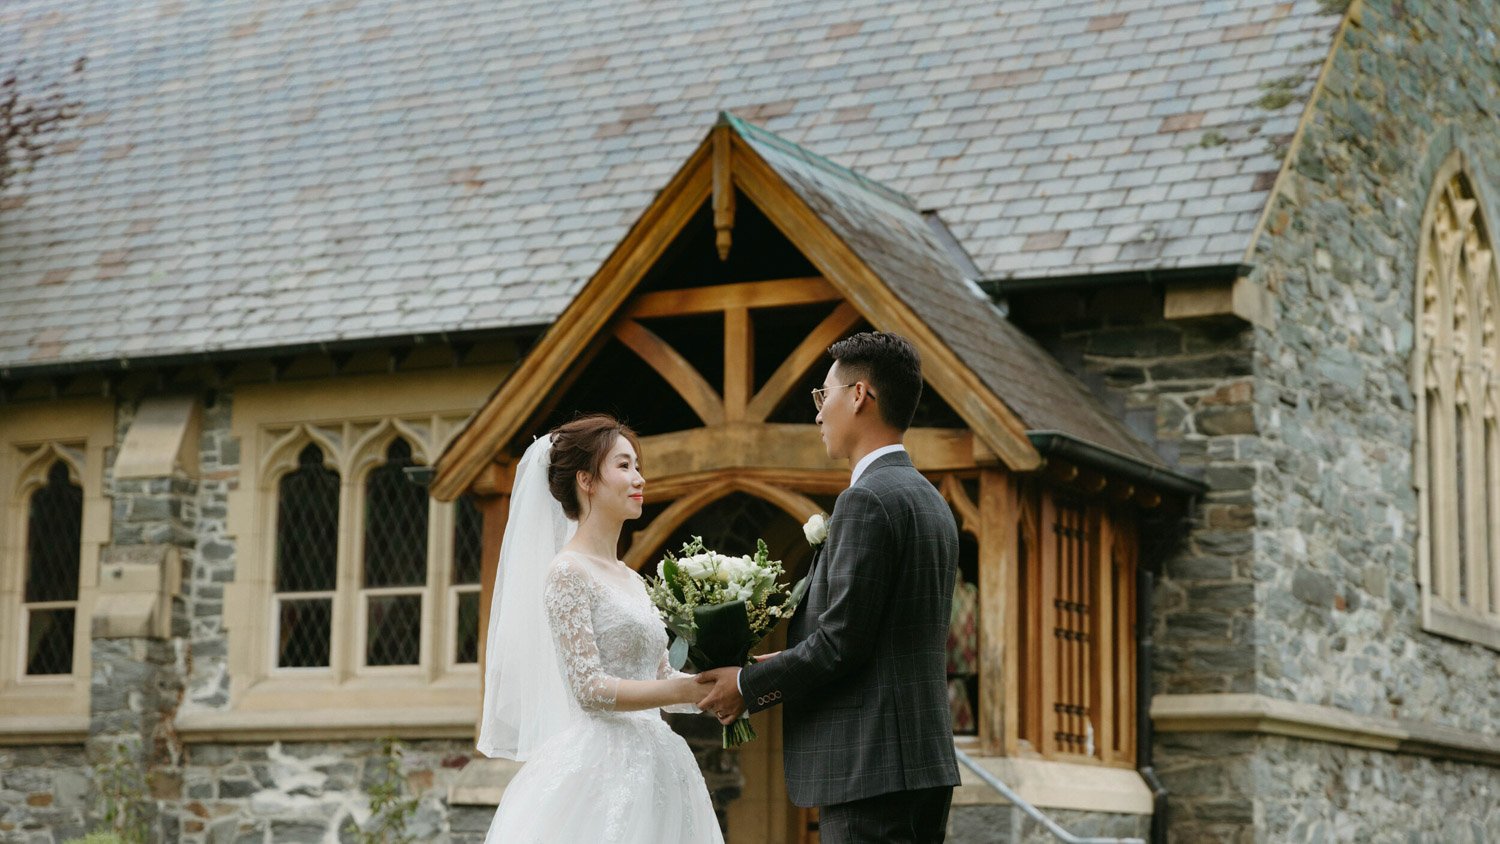 Queenstownn St Peter's Anglican Church wedding elopement photographer Panda Bay Films-26.jpg